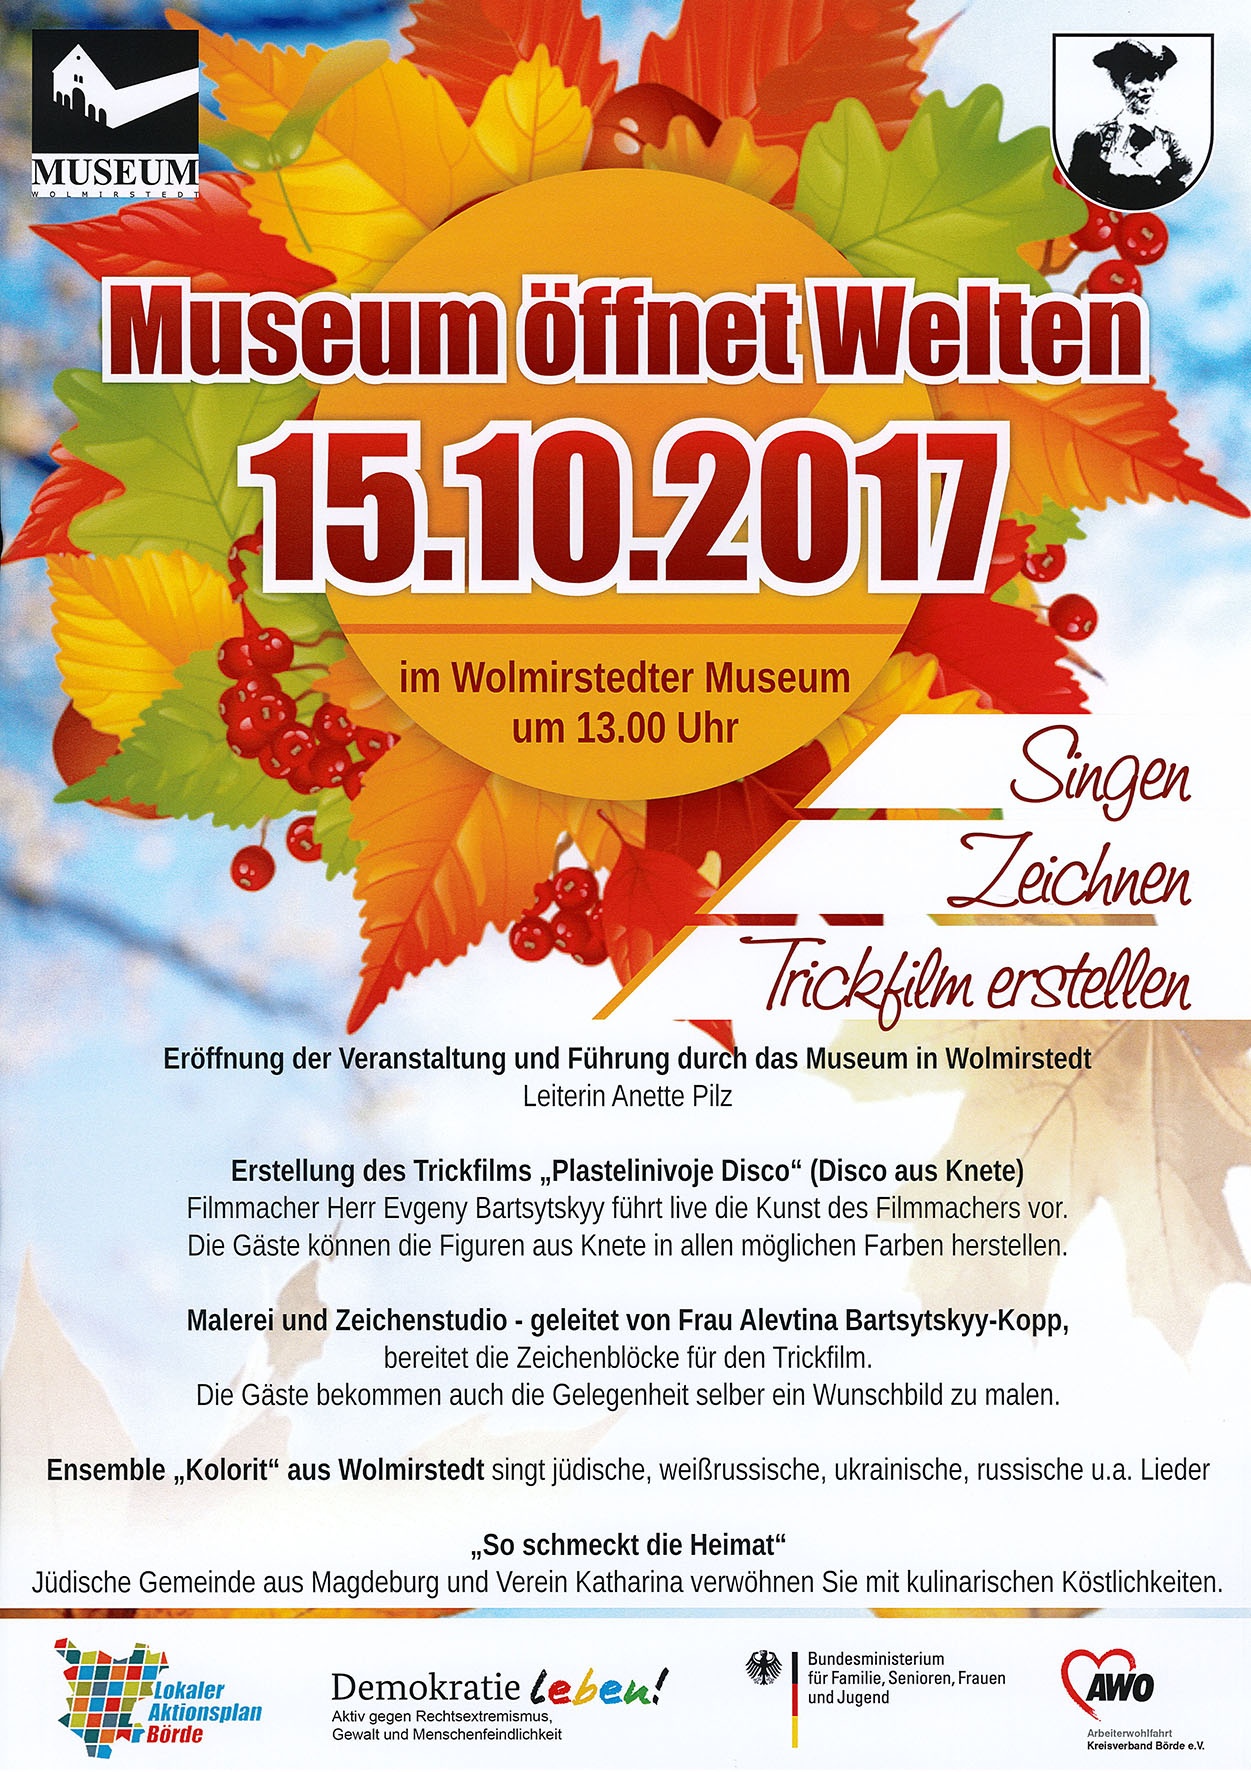 Plakat zur Veranstaltung "Museum öffnet Welten" am 15.10.2017 (Museum Wolmirstedt RR-F)